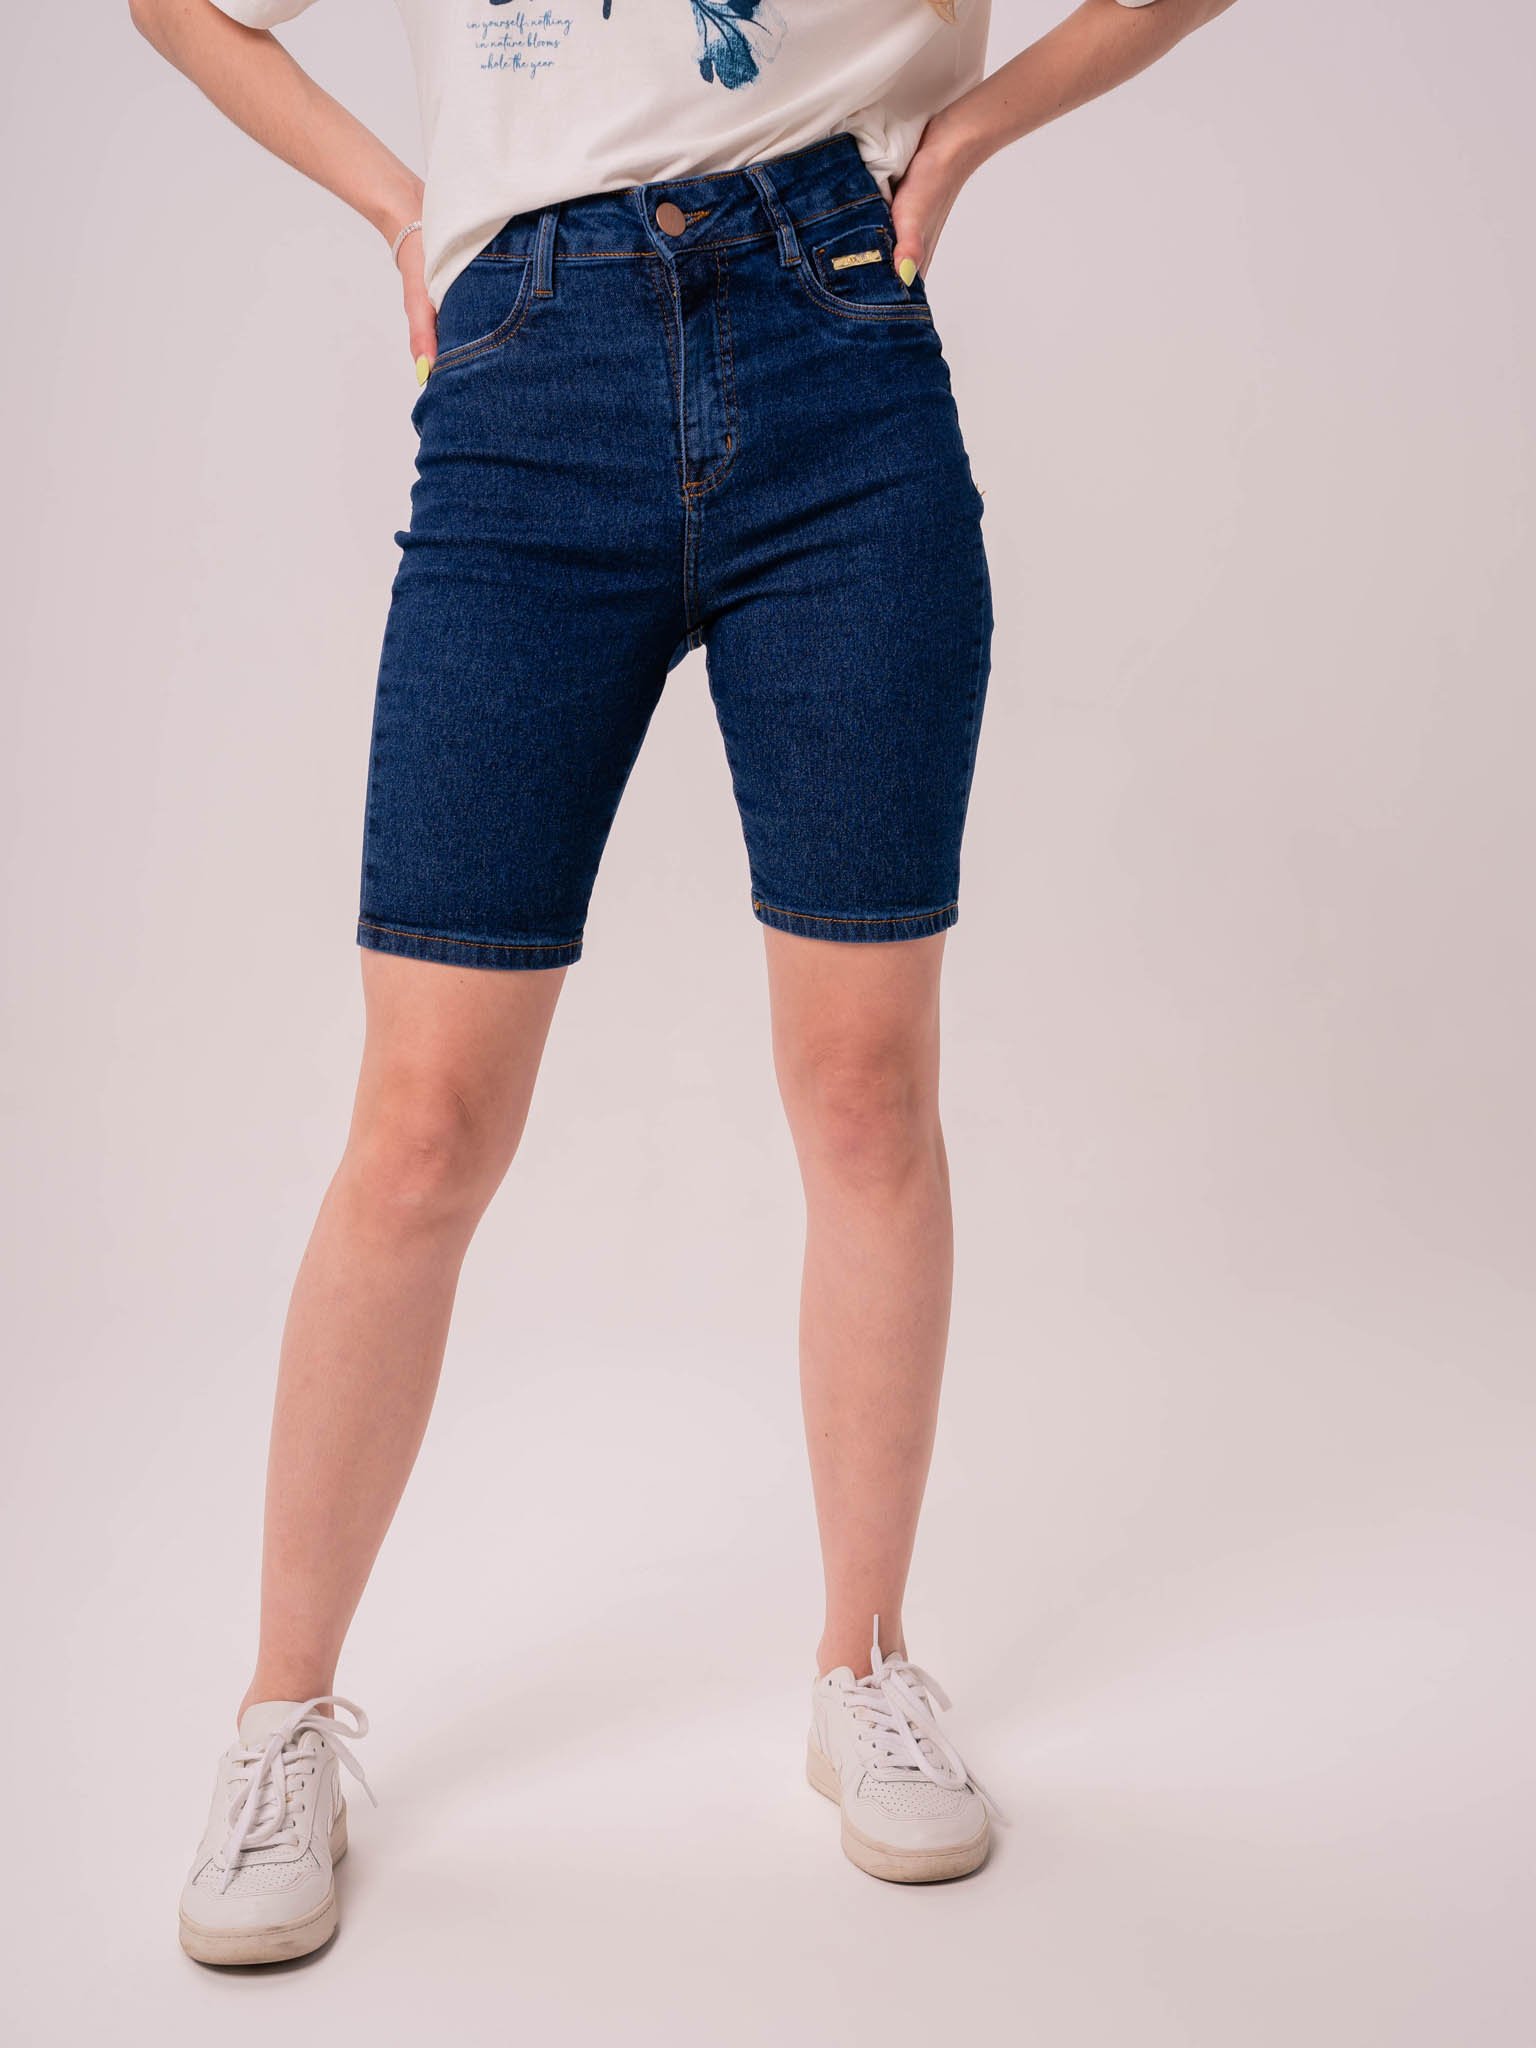 Bermuda Jeans Feminina